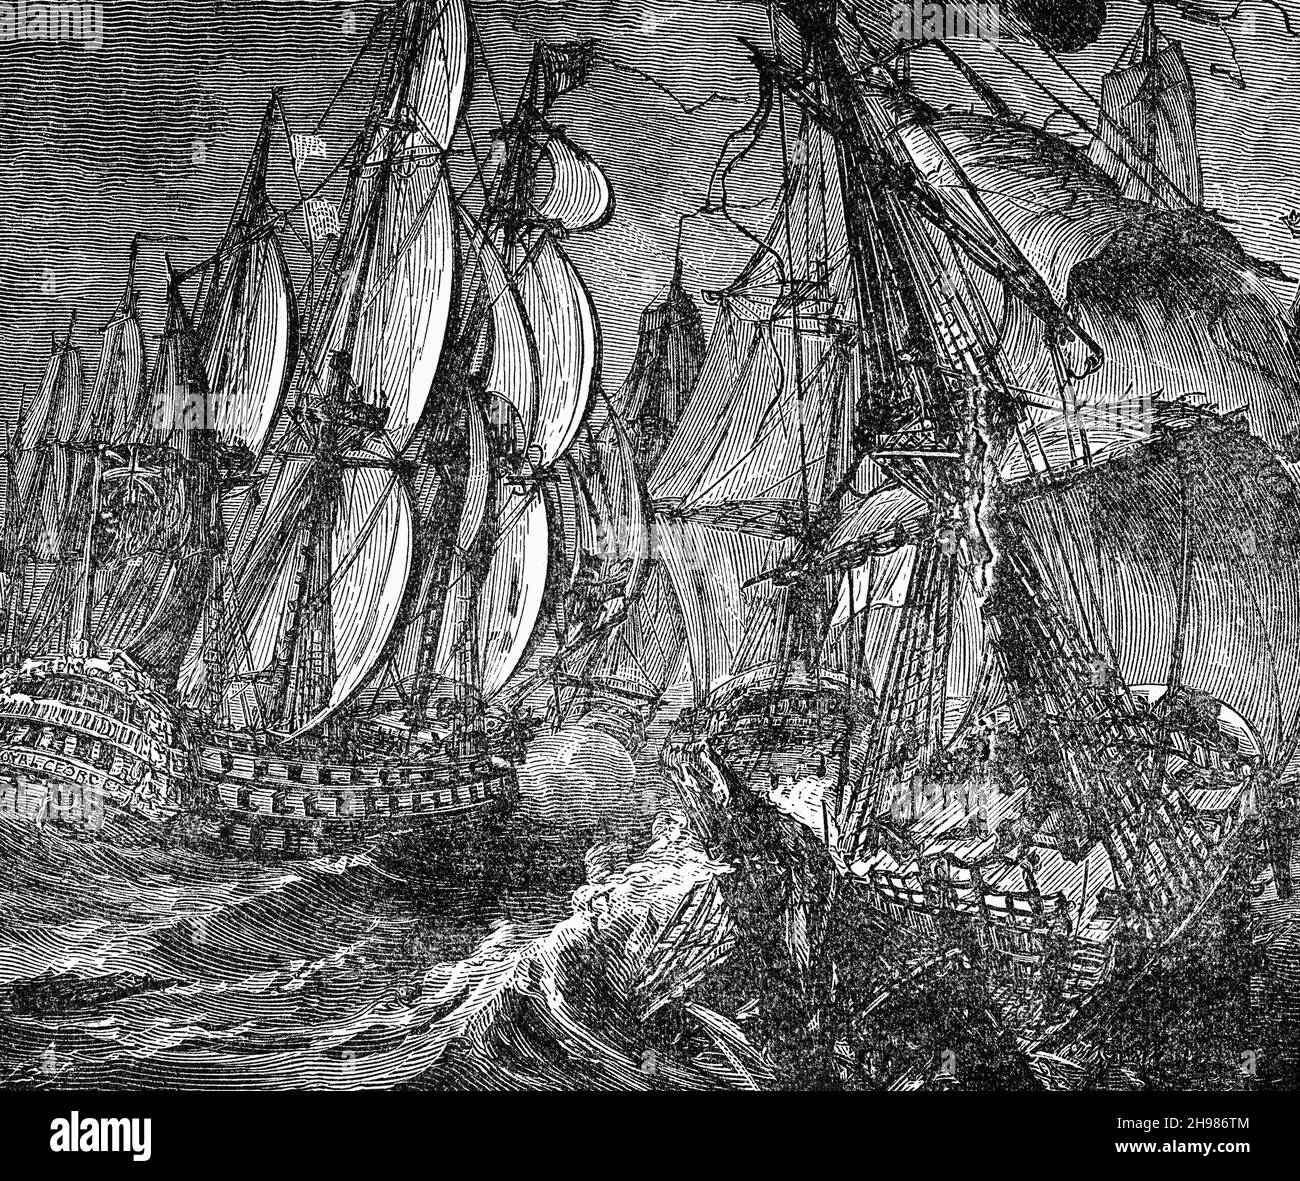 Eine Illustration der Schlacht von Cape St. Vincent aus dem späten 19th. Jahrhundert, einer Seeschlacht, die am 16. Januar 1780 während des amerikanischen Revolutionskrieges vor der Südküste Portugals stattfand. Eine britische Flotte unter Admiral Sir George Rodney besiegte eine spanische Staffel unter Don Juan de Lángara. Die Schlacht wird manchmal als Mondlicht-Schlacht bezeichnet, weil es ungewöhnlich war, dass Seeschlachten im Zeitalter von Sail nachts stattfanden. Es war auch der erste große Seesieg für die Briten über ihre europäischen Feinde im Krieg und bewies den Wert der Kupferumhüllung der Rümpfe von Kriegsschiffen. Stockfoto